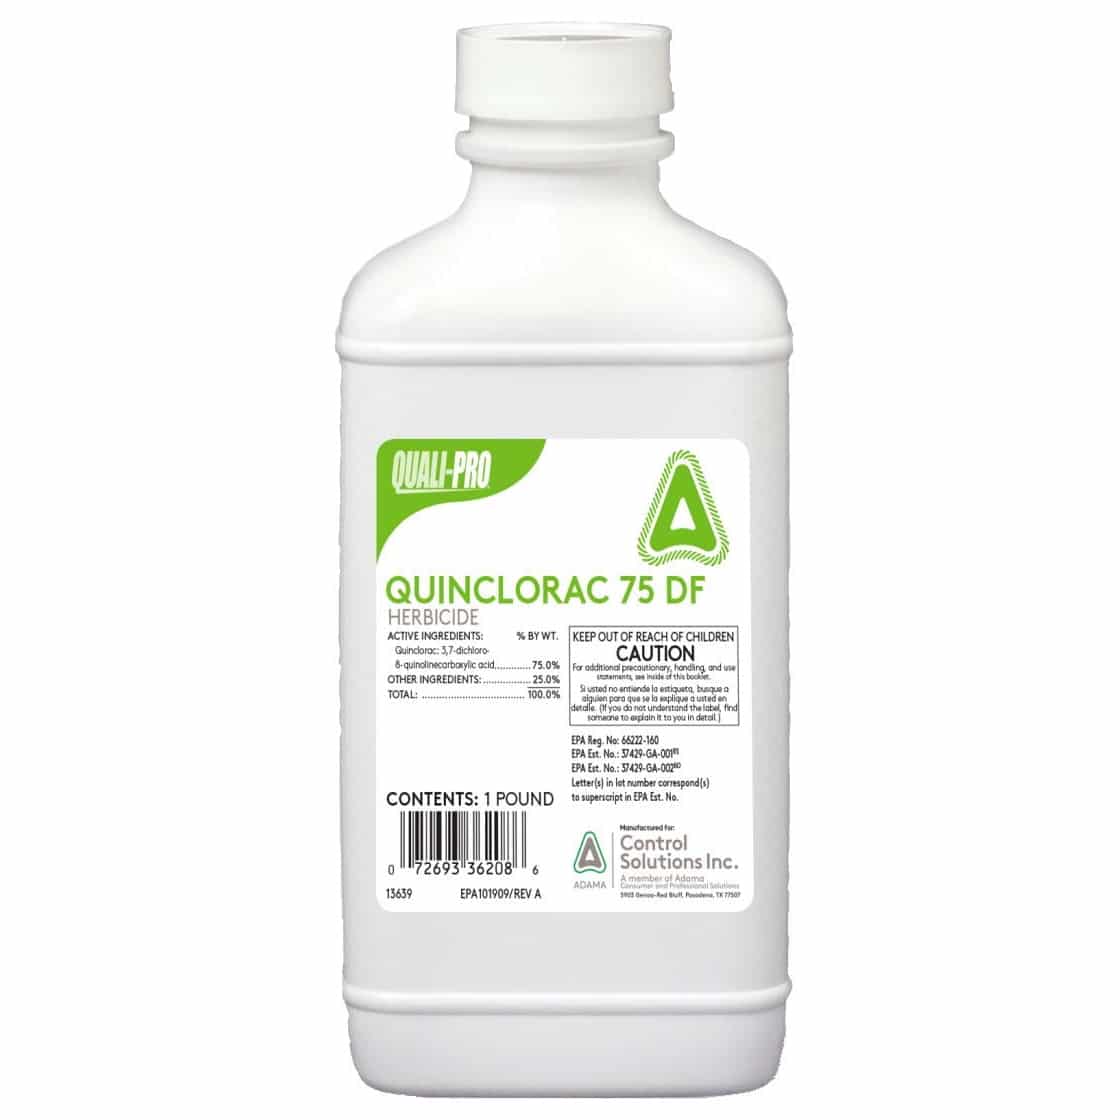 Quali-Pro Quinclorac 75 DF Selective Herbicide